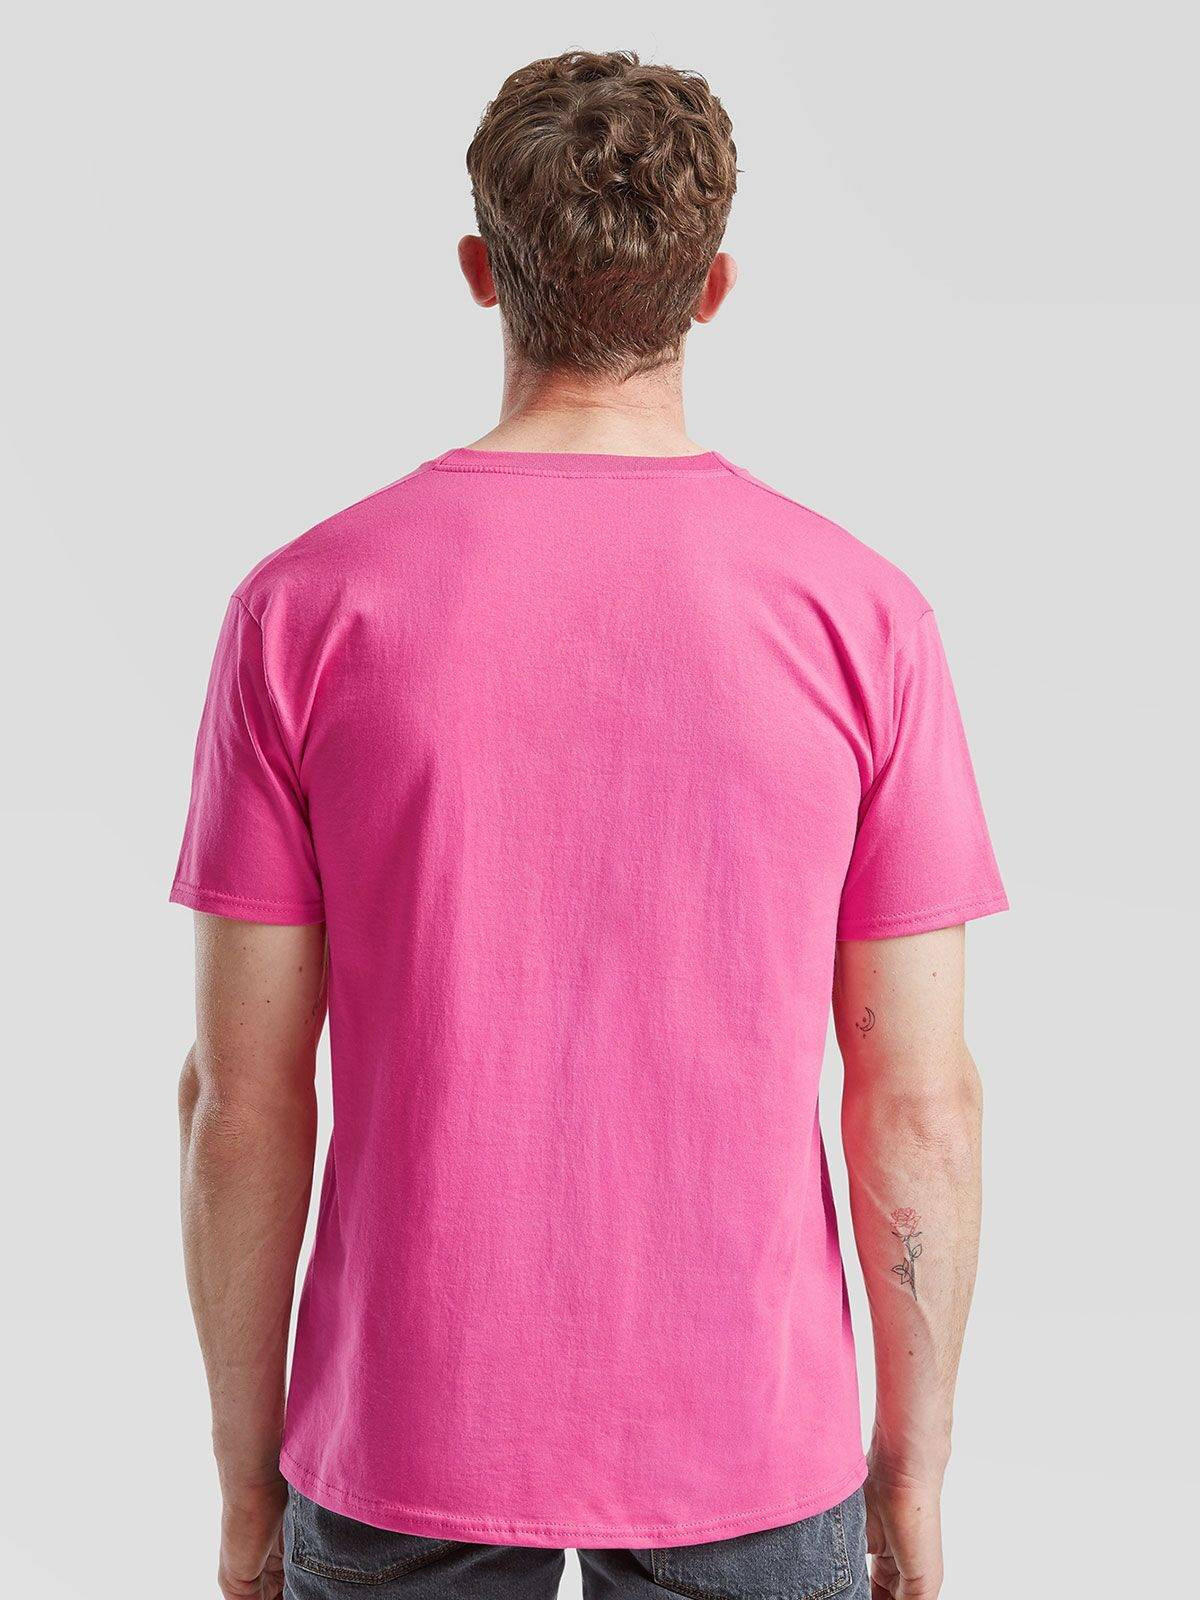 T-Shirt Valueweight T 165G - 100% Algodão - Castanho / L - Brindes